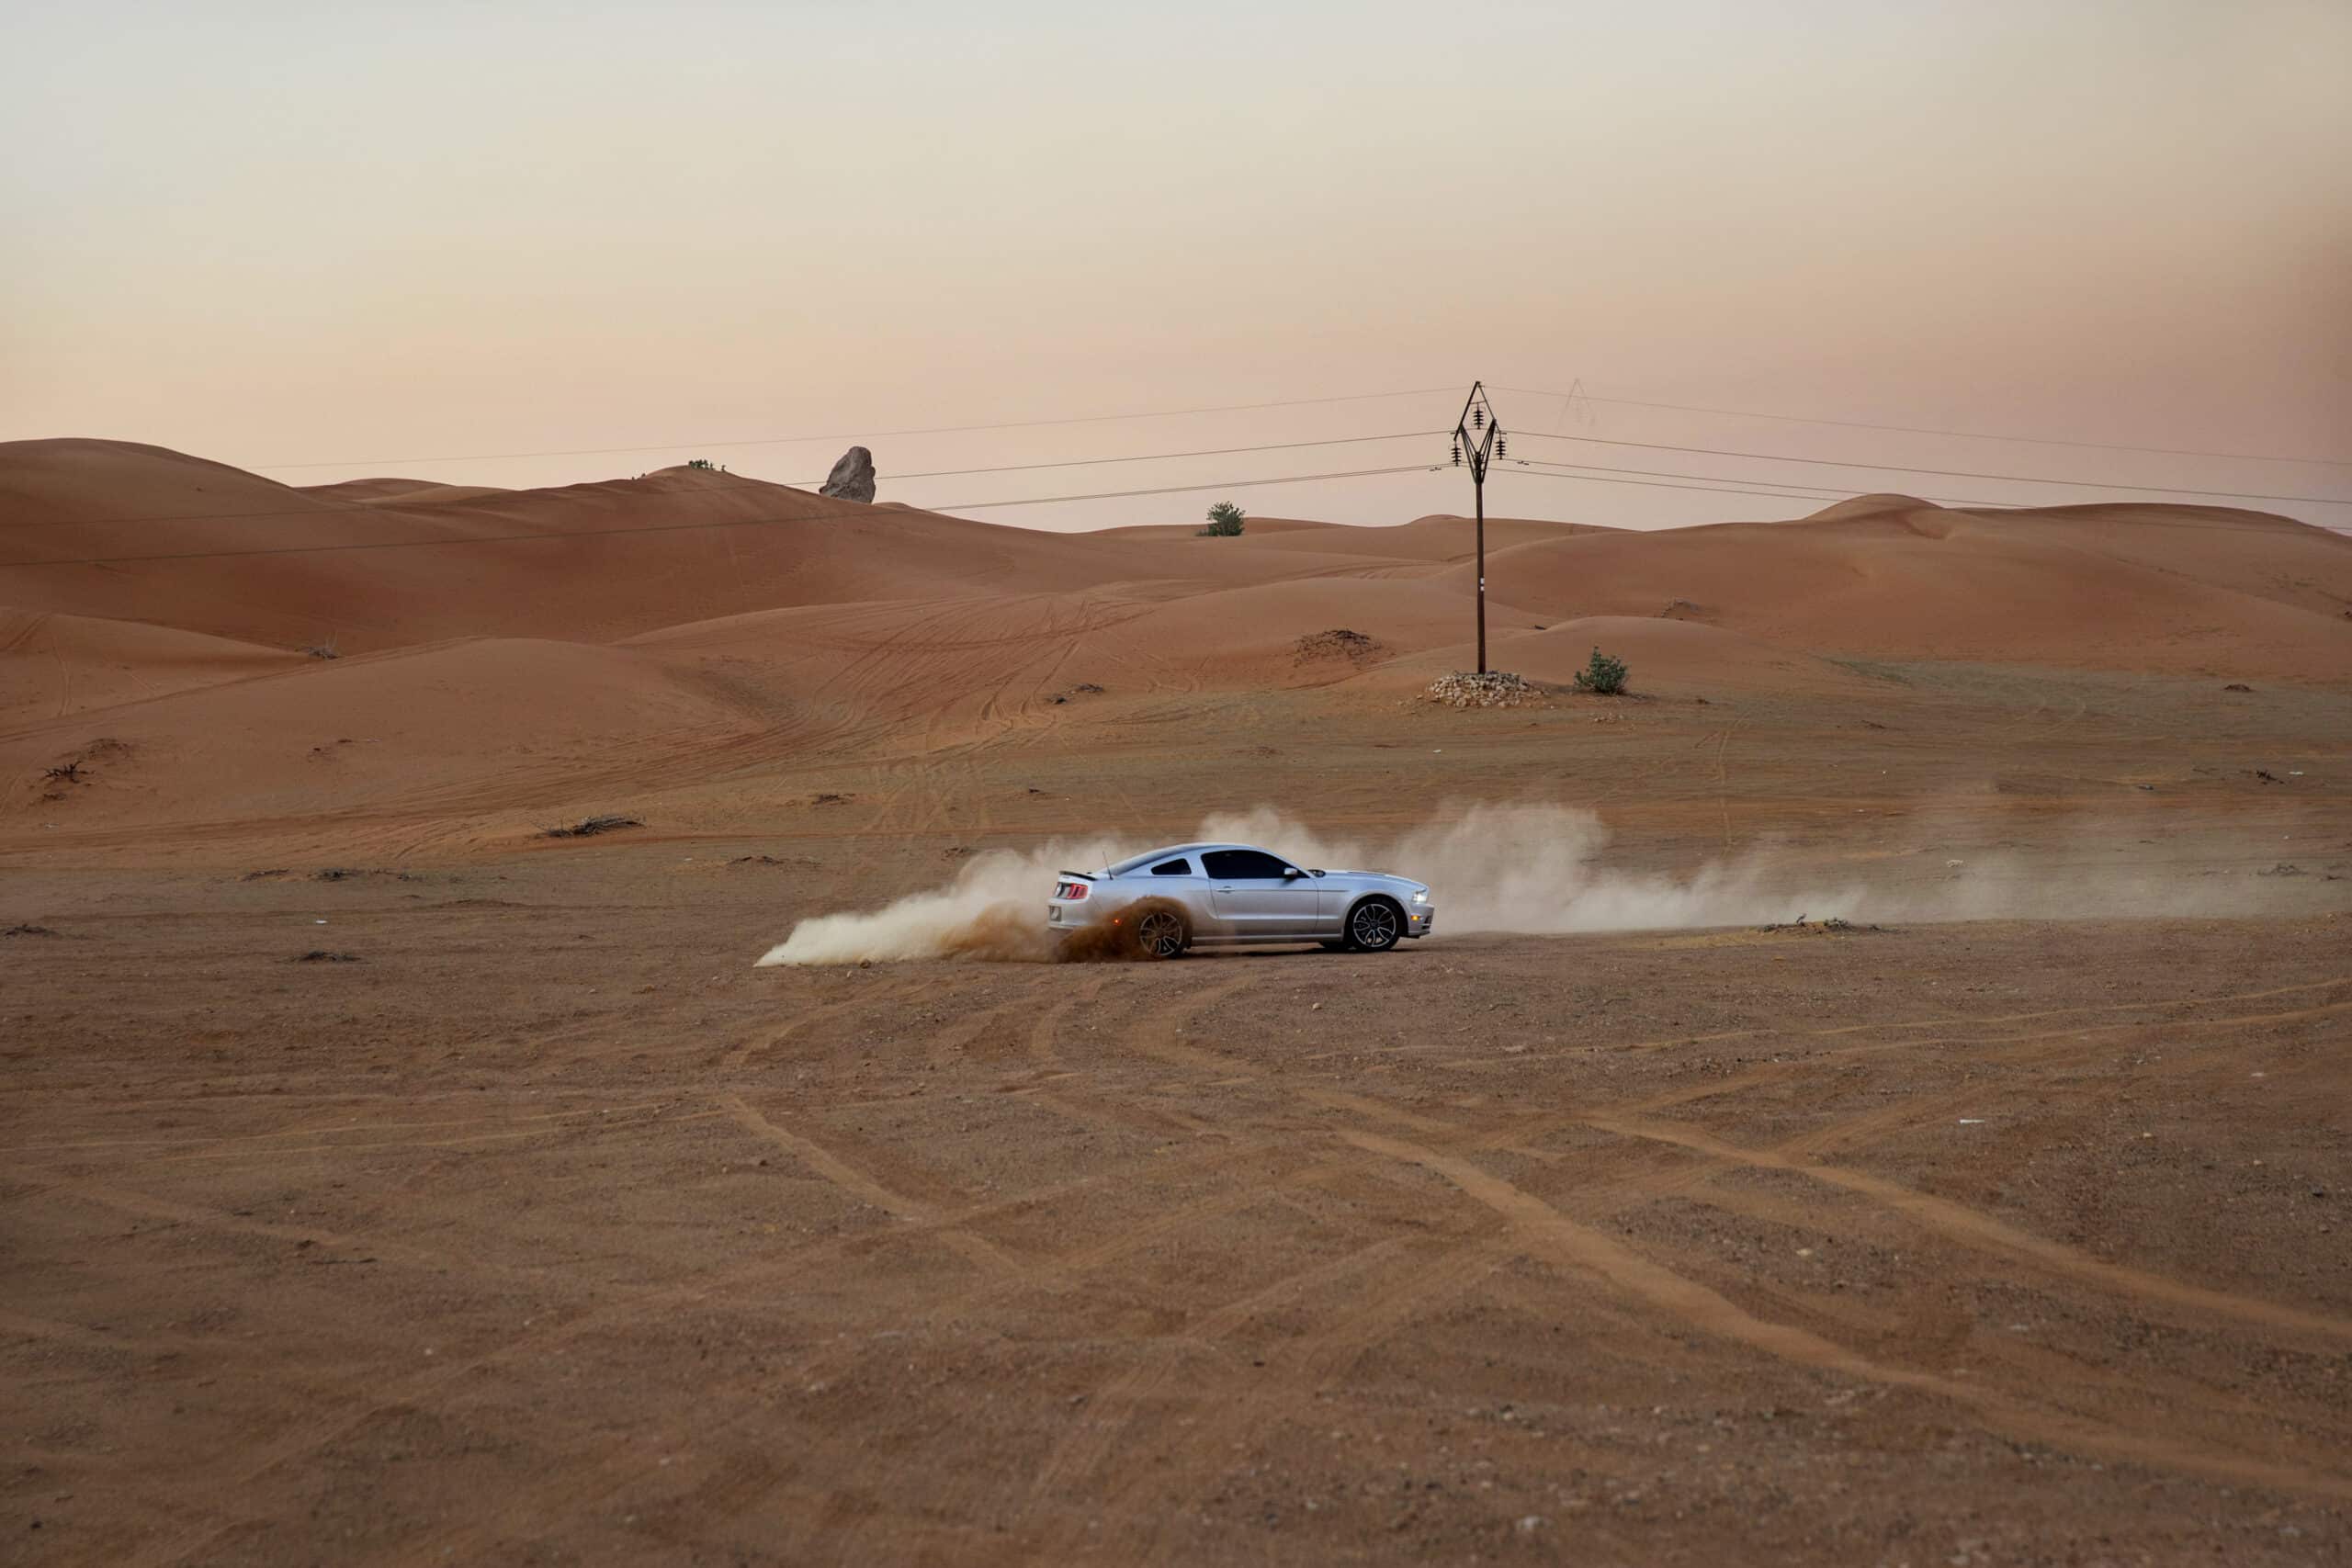 Ein silberner Sportwagen rast durch eine Wüstenlandschaft und wirbelt unter einem sanften Sonnenuntergangshimmel Staub auf. Im Hintergrund sind spärliche Vegetation und sanfte Sanddünen zu sehen. © Fotografie Tomas Rodriguez